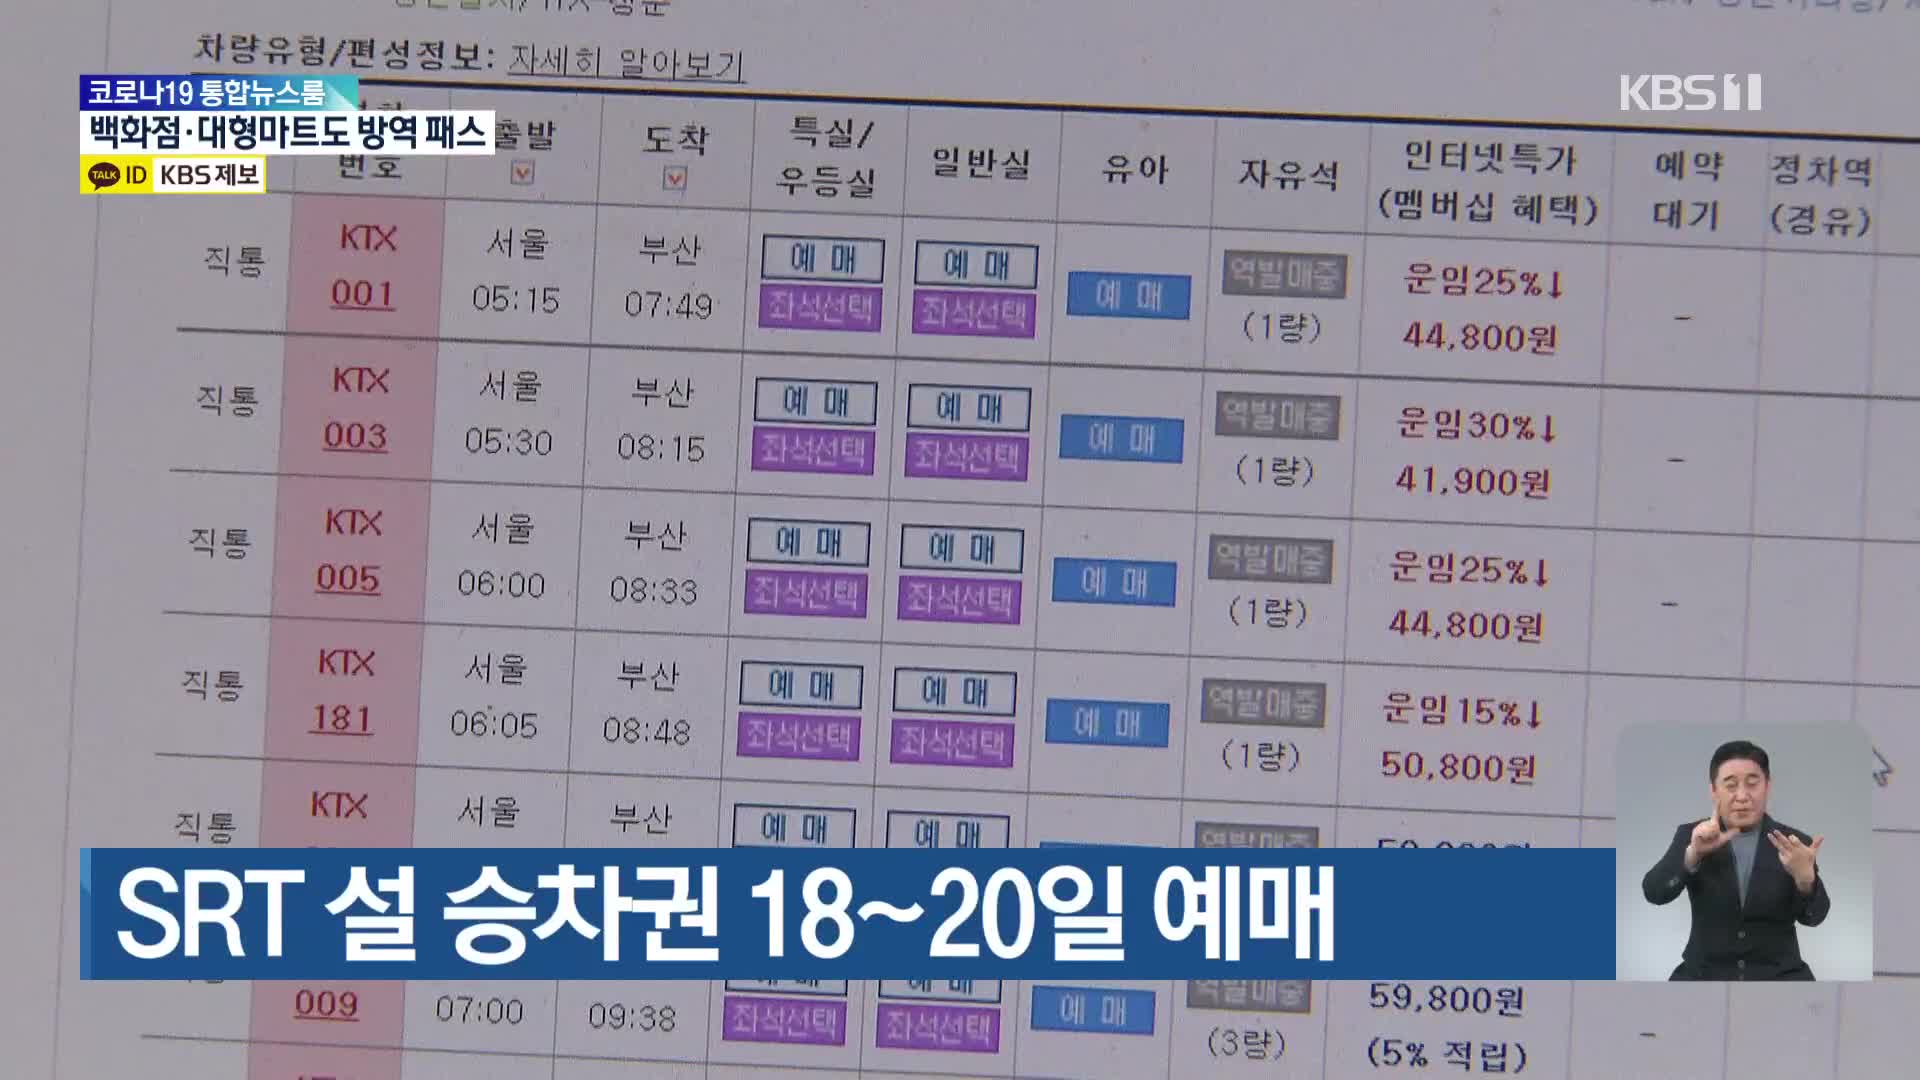 SRT 설 승차권 18~20일 예매